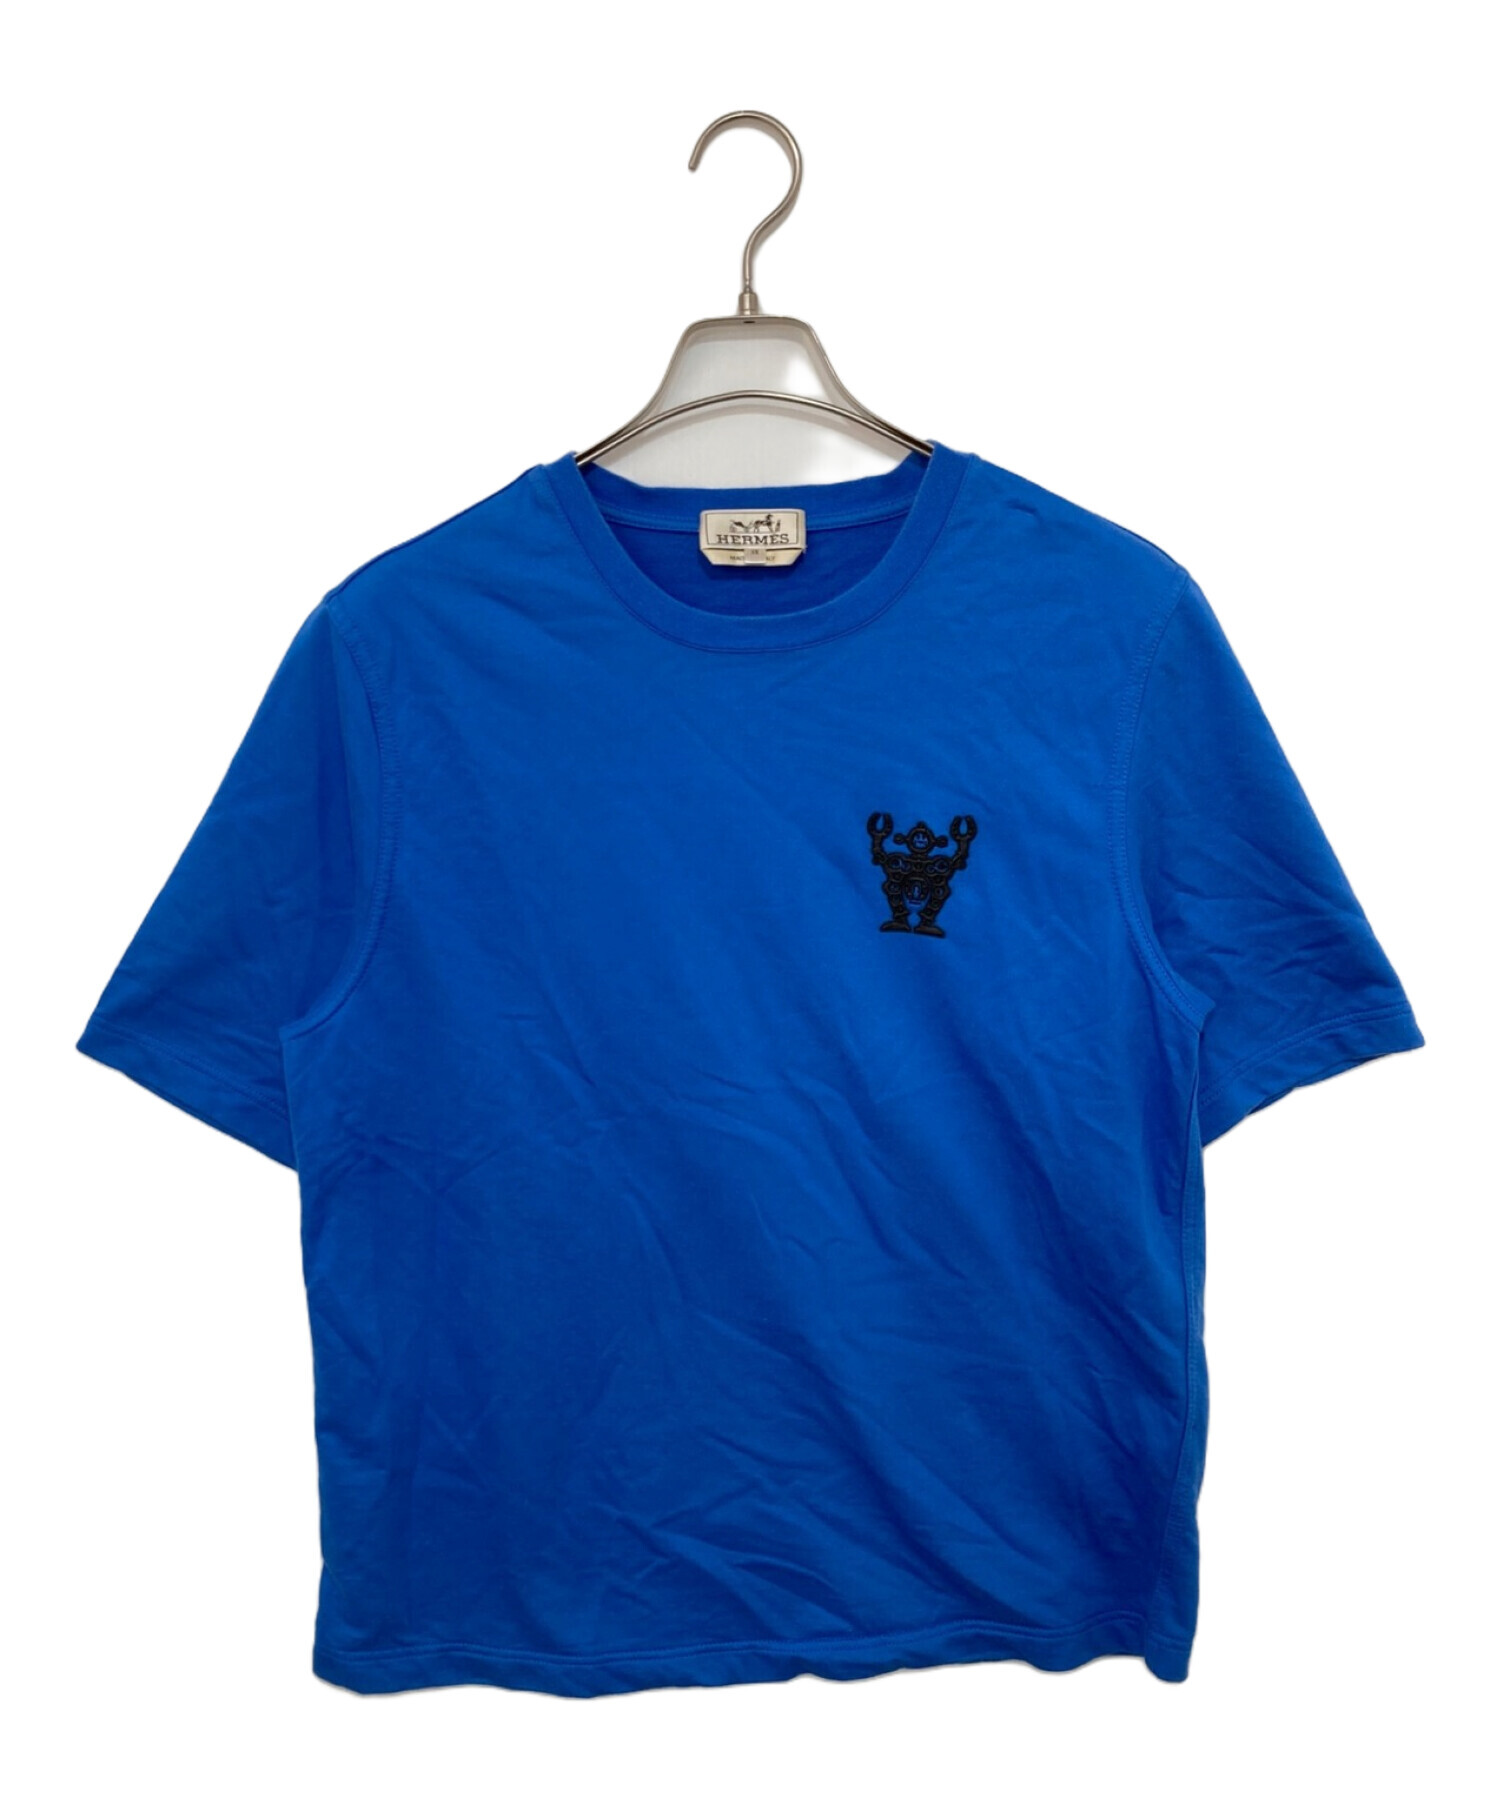 HERMES (エルメス) ロボットロゴTシャツ ブルー サイズ:XS